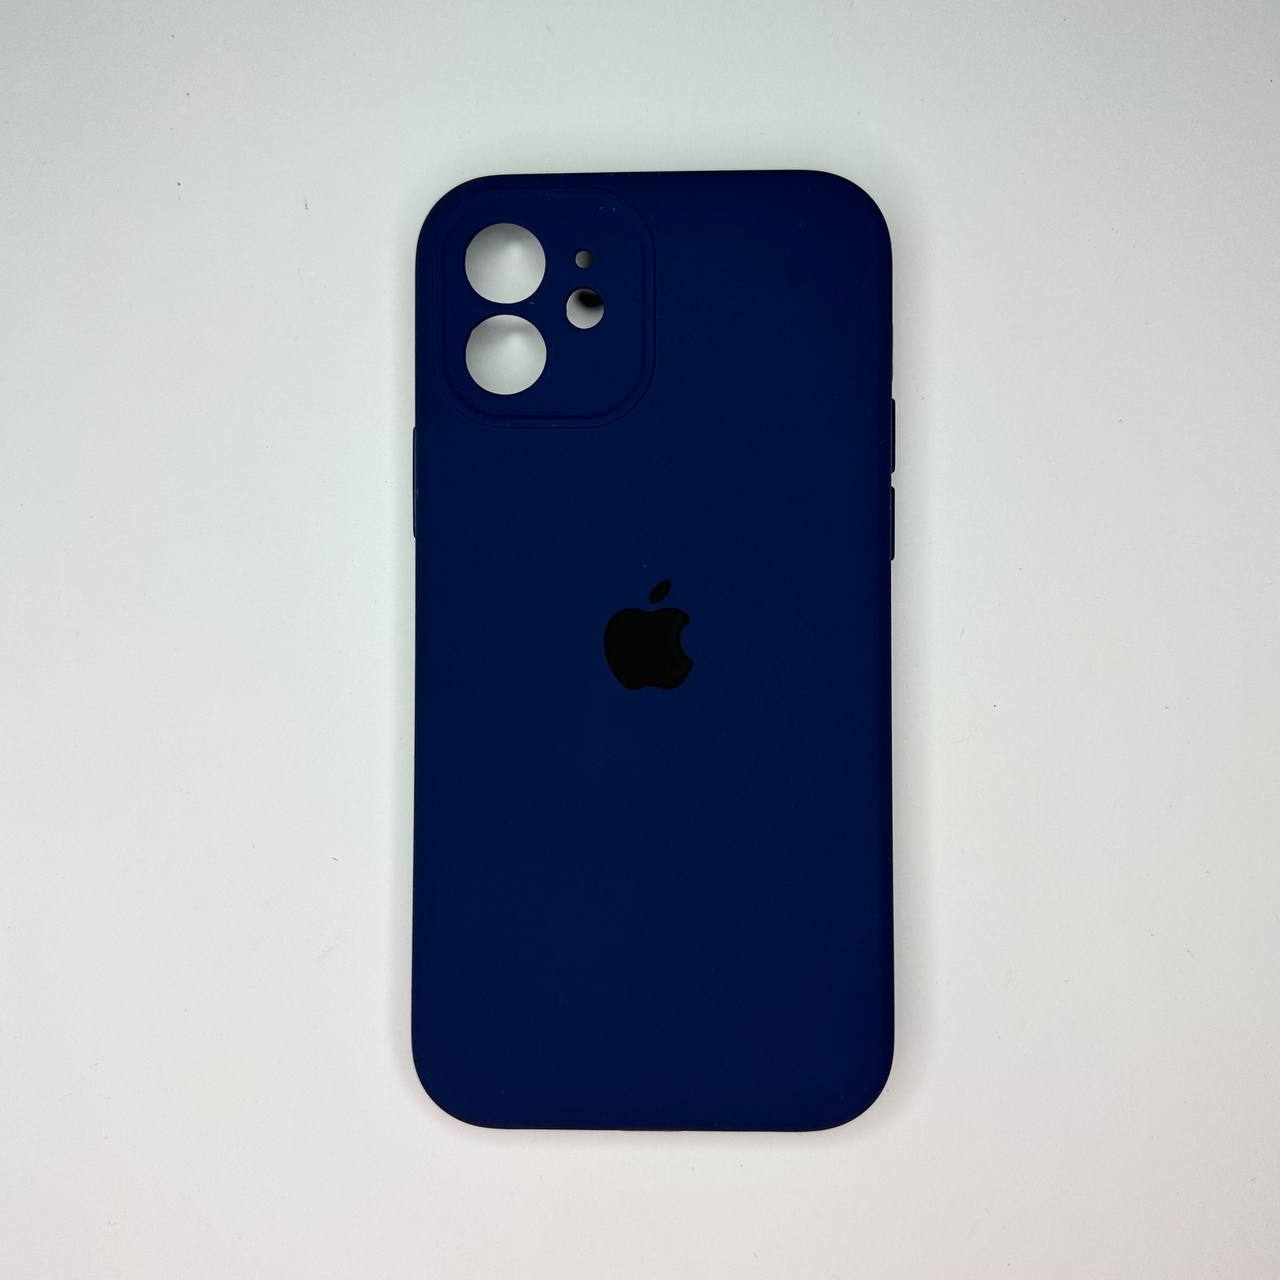 قاب گوشی اپل مدل iphone 12